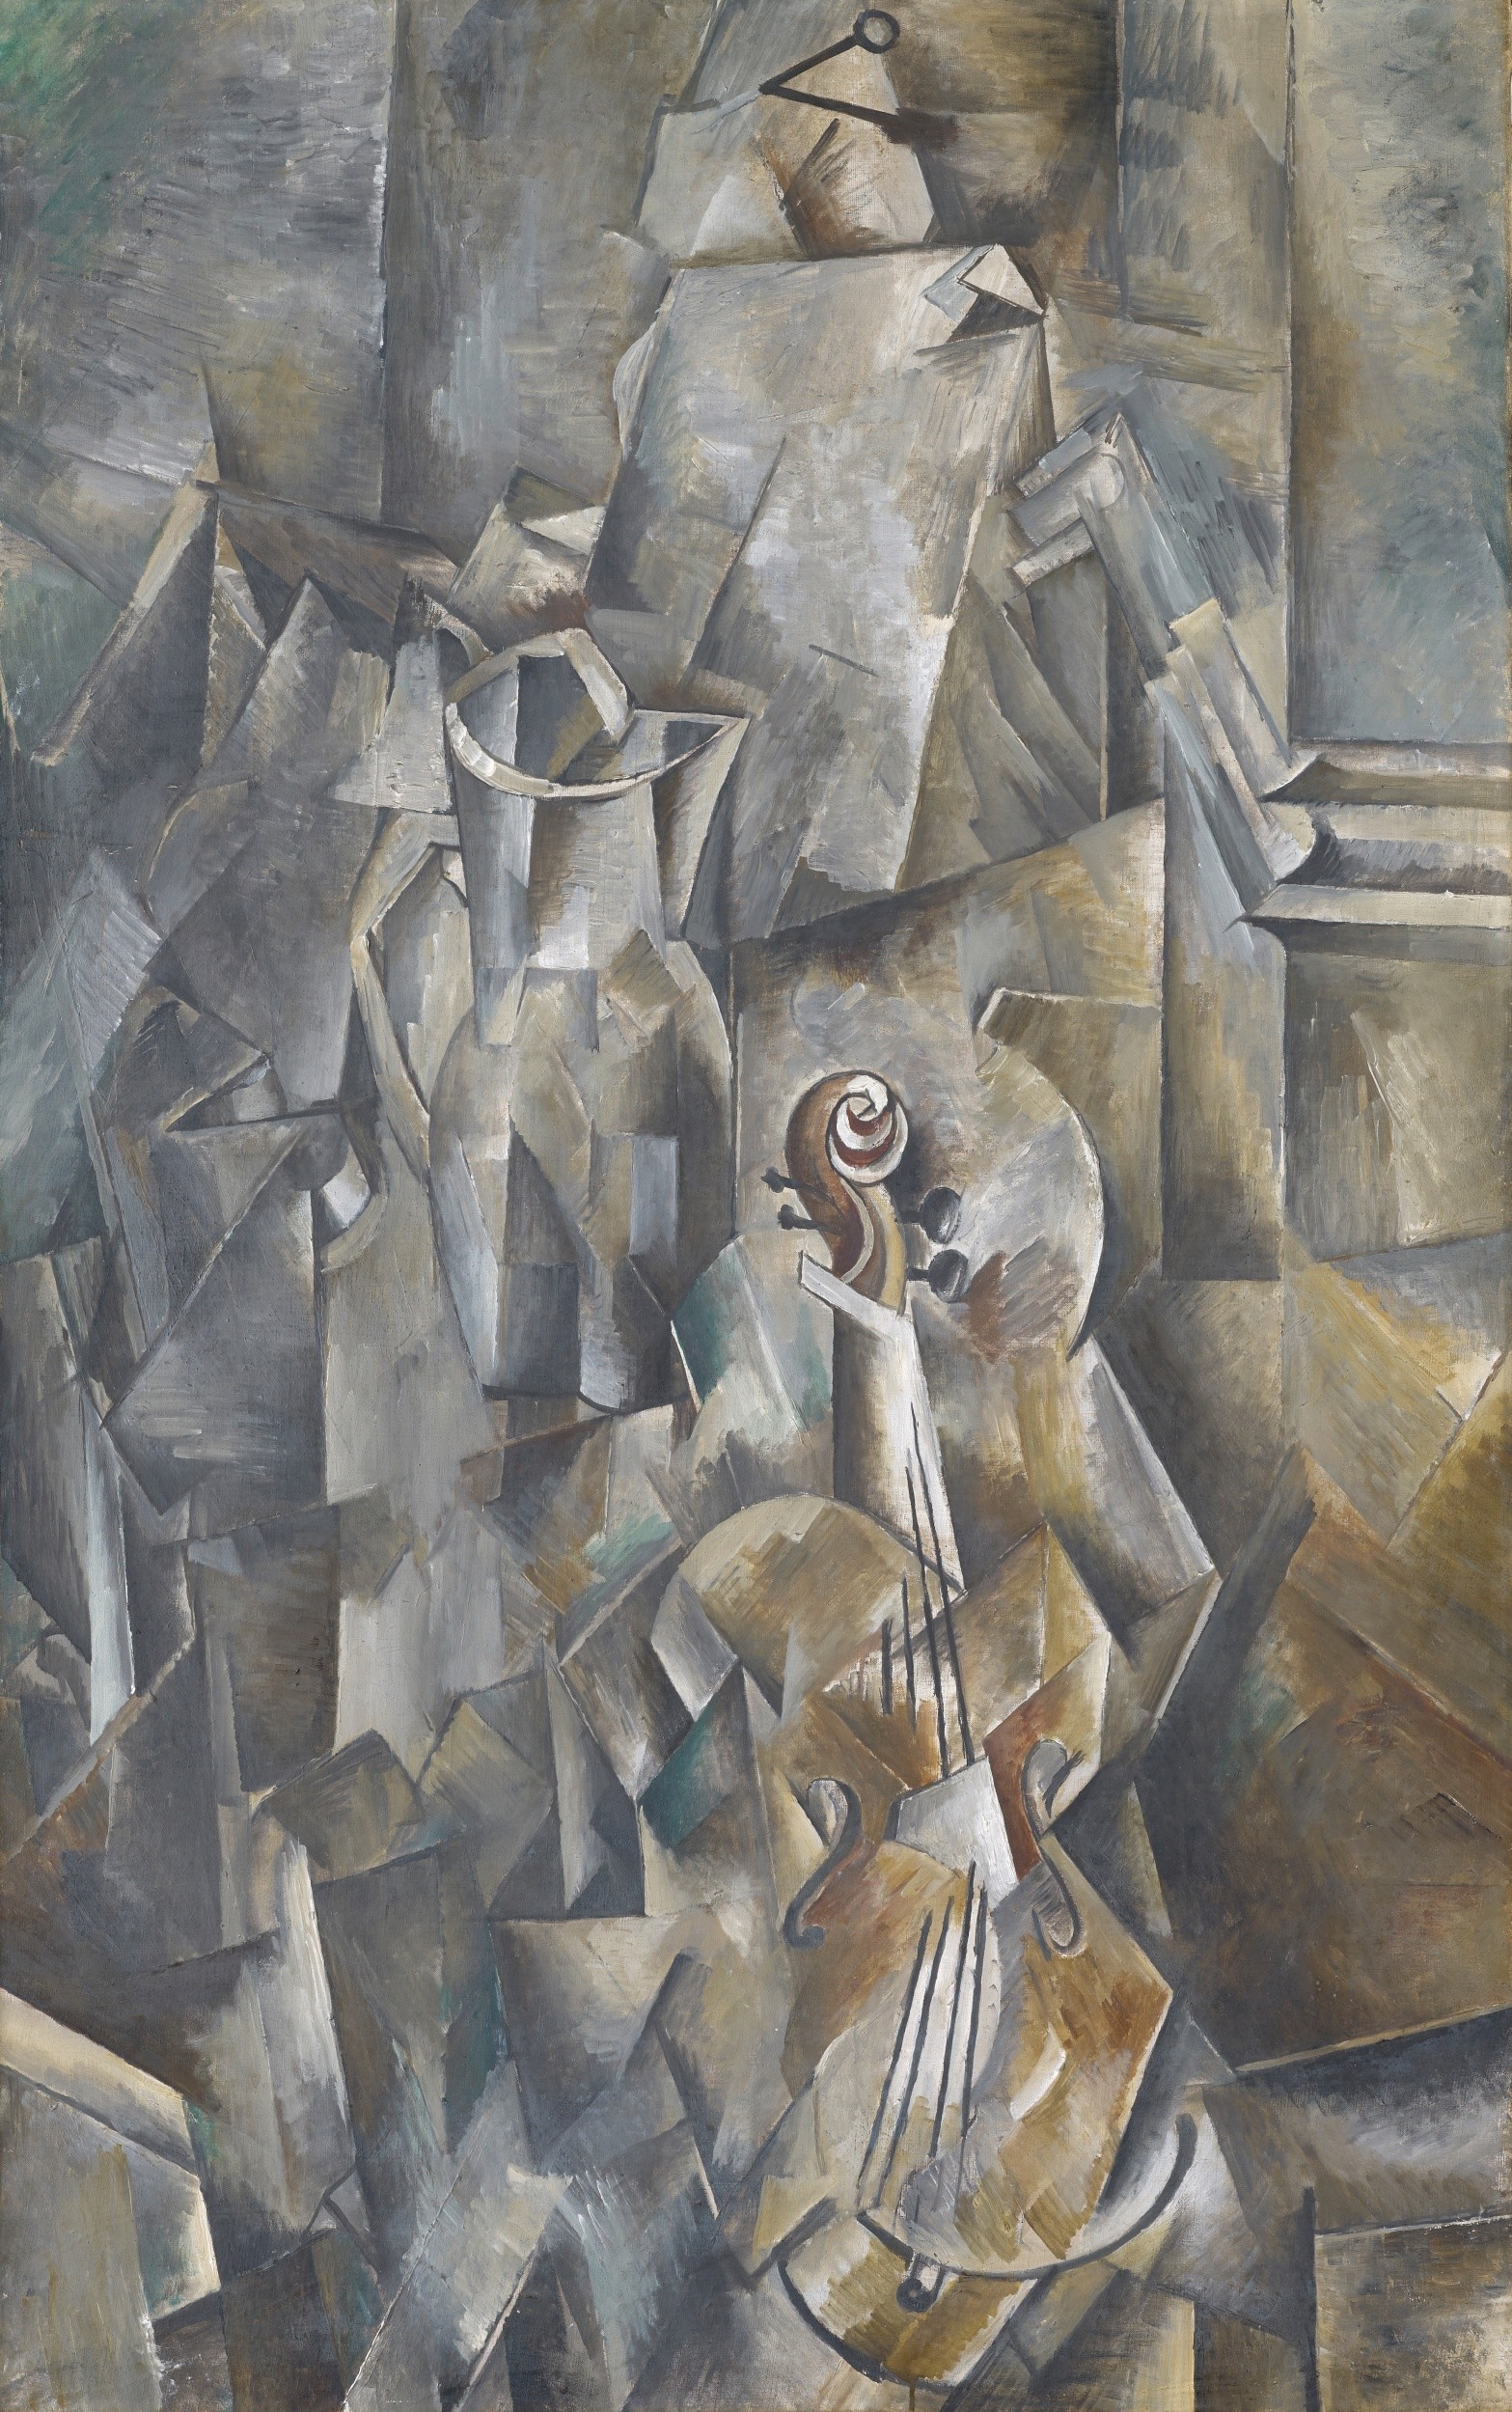 Georges Braque: Krug und Violine. 1909/1910. Kunstmuseum Basel, Schenkung Raoul La Roche. Bild: Julian Salinas

